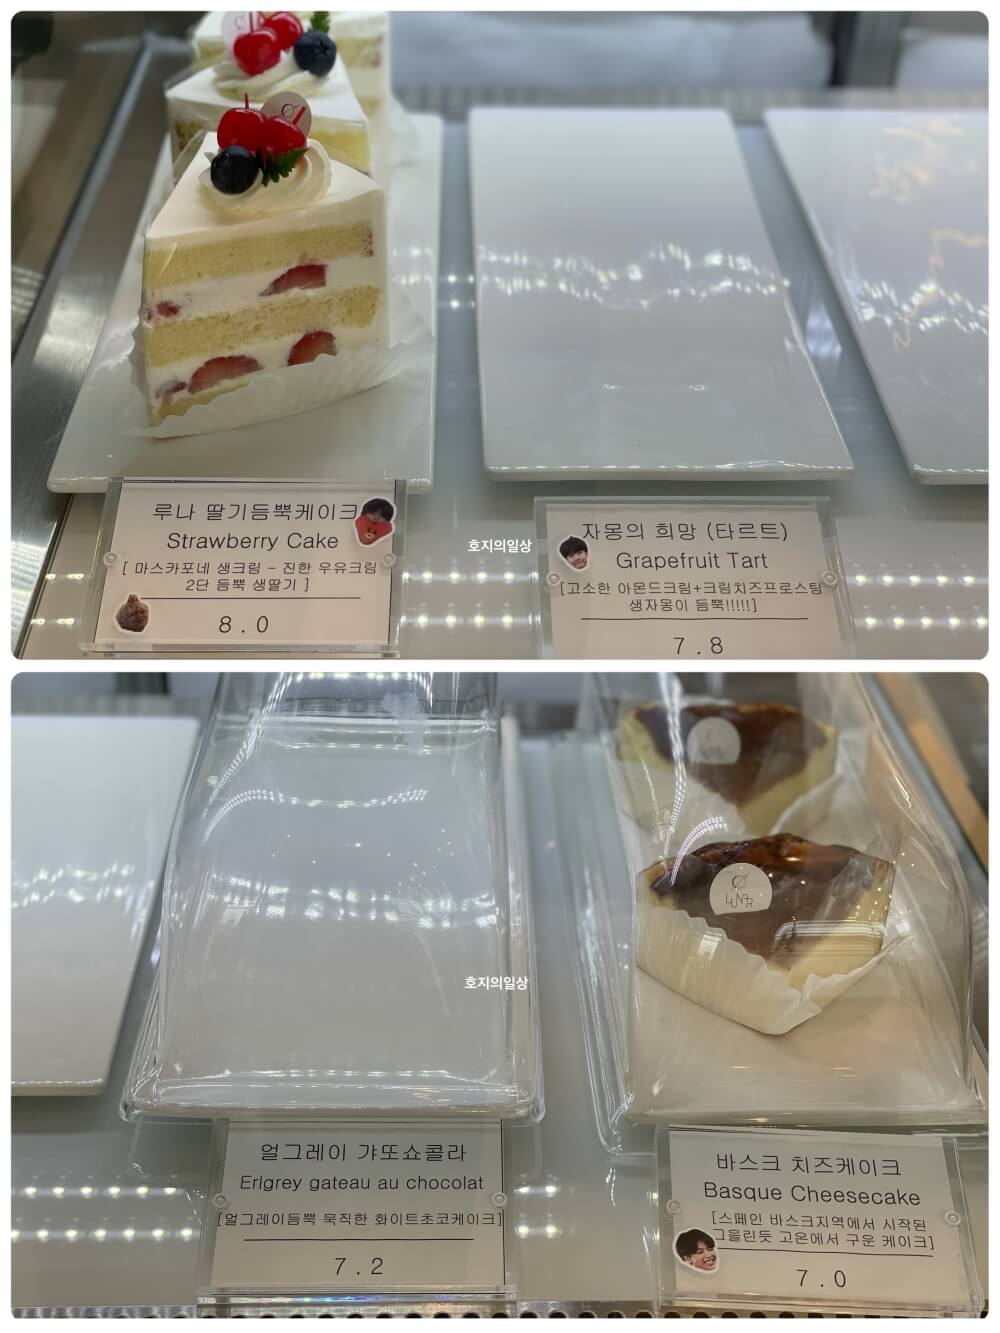 용인 고기리 카페 맛집 루나커피 라운지 - 케이크